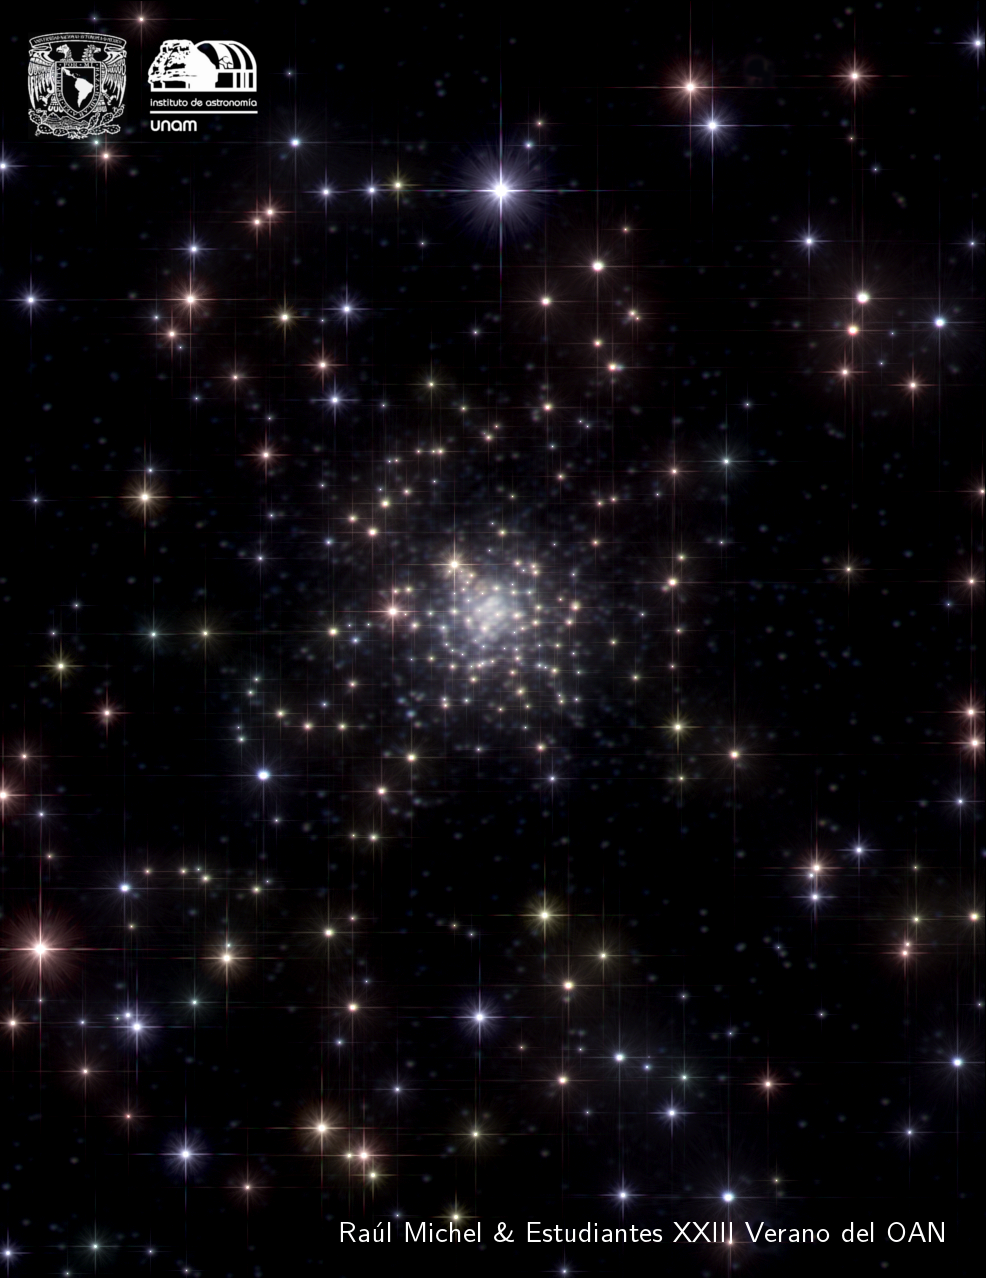 NGC6139